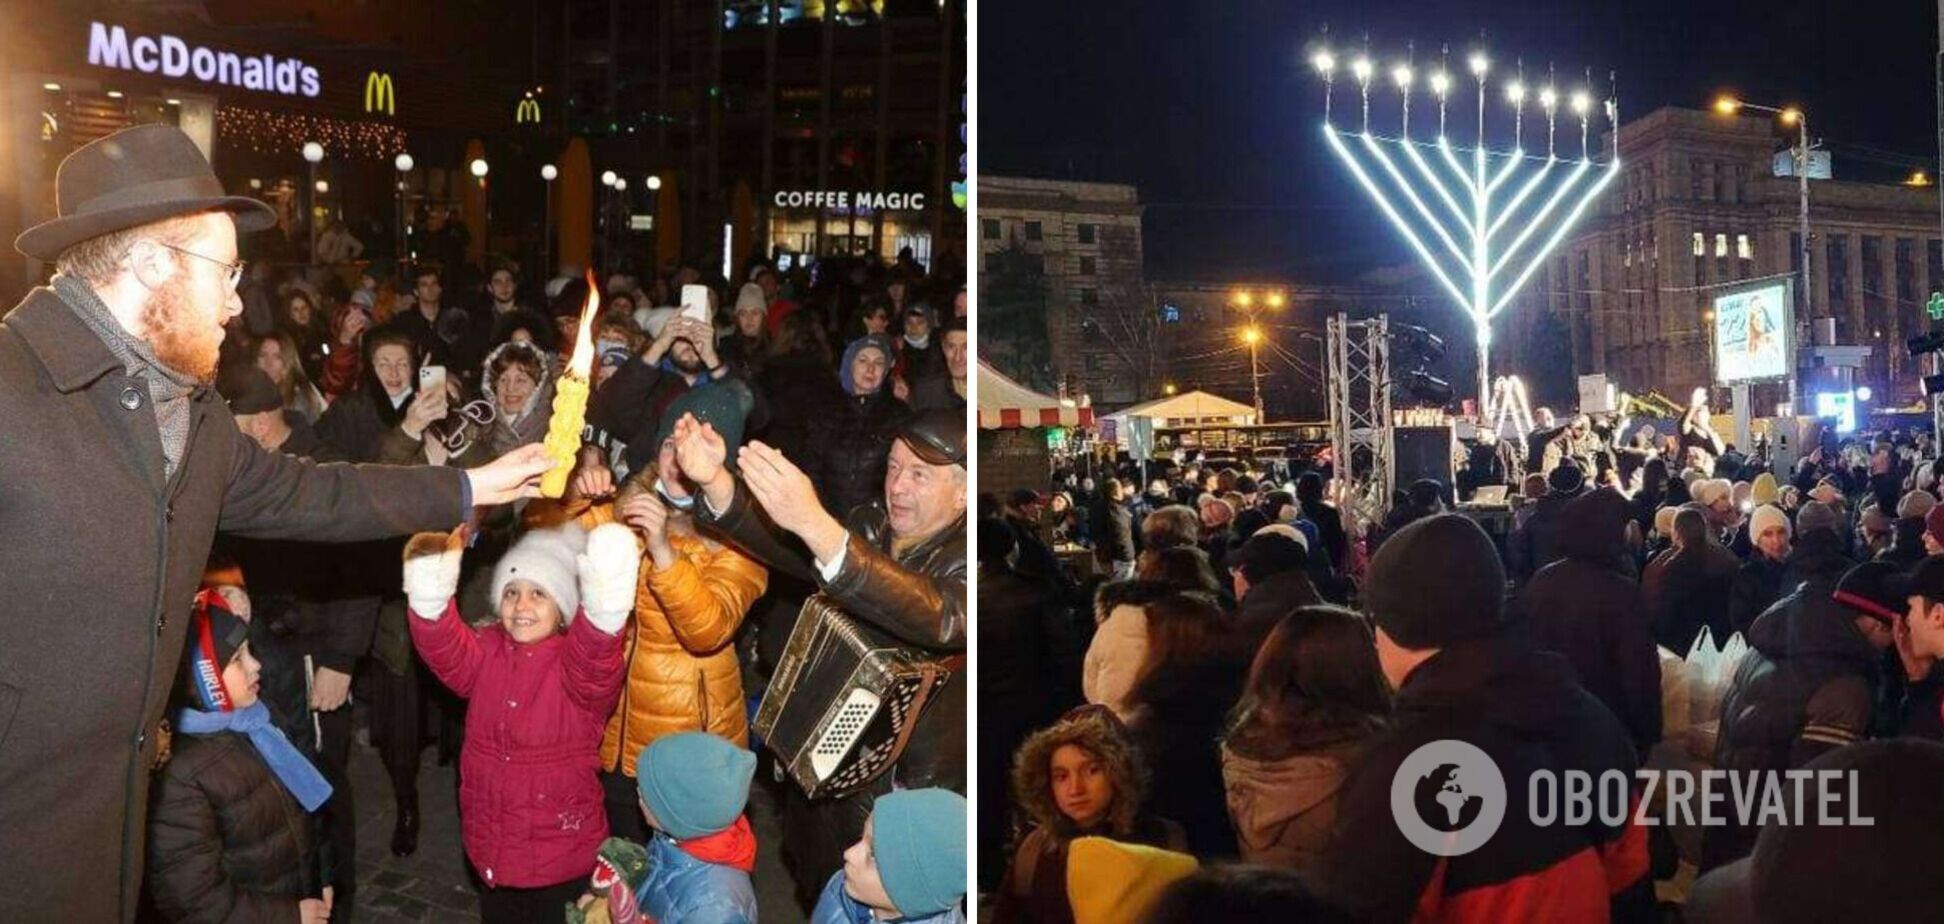 Зібралися тисячі людей: у центрі Дніпра запалили сьому ханукальну свічку. Фото та відео святкування